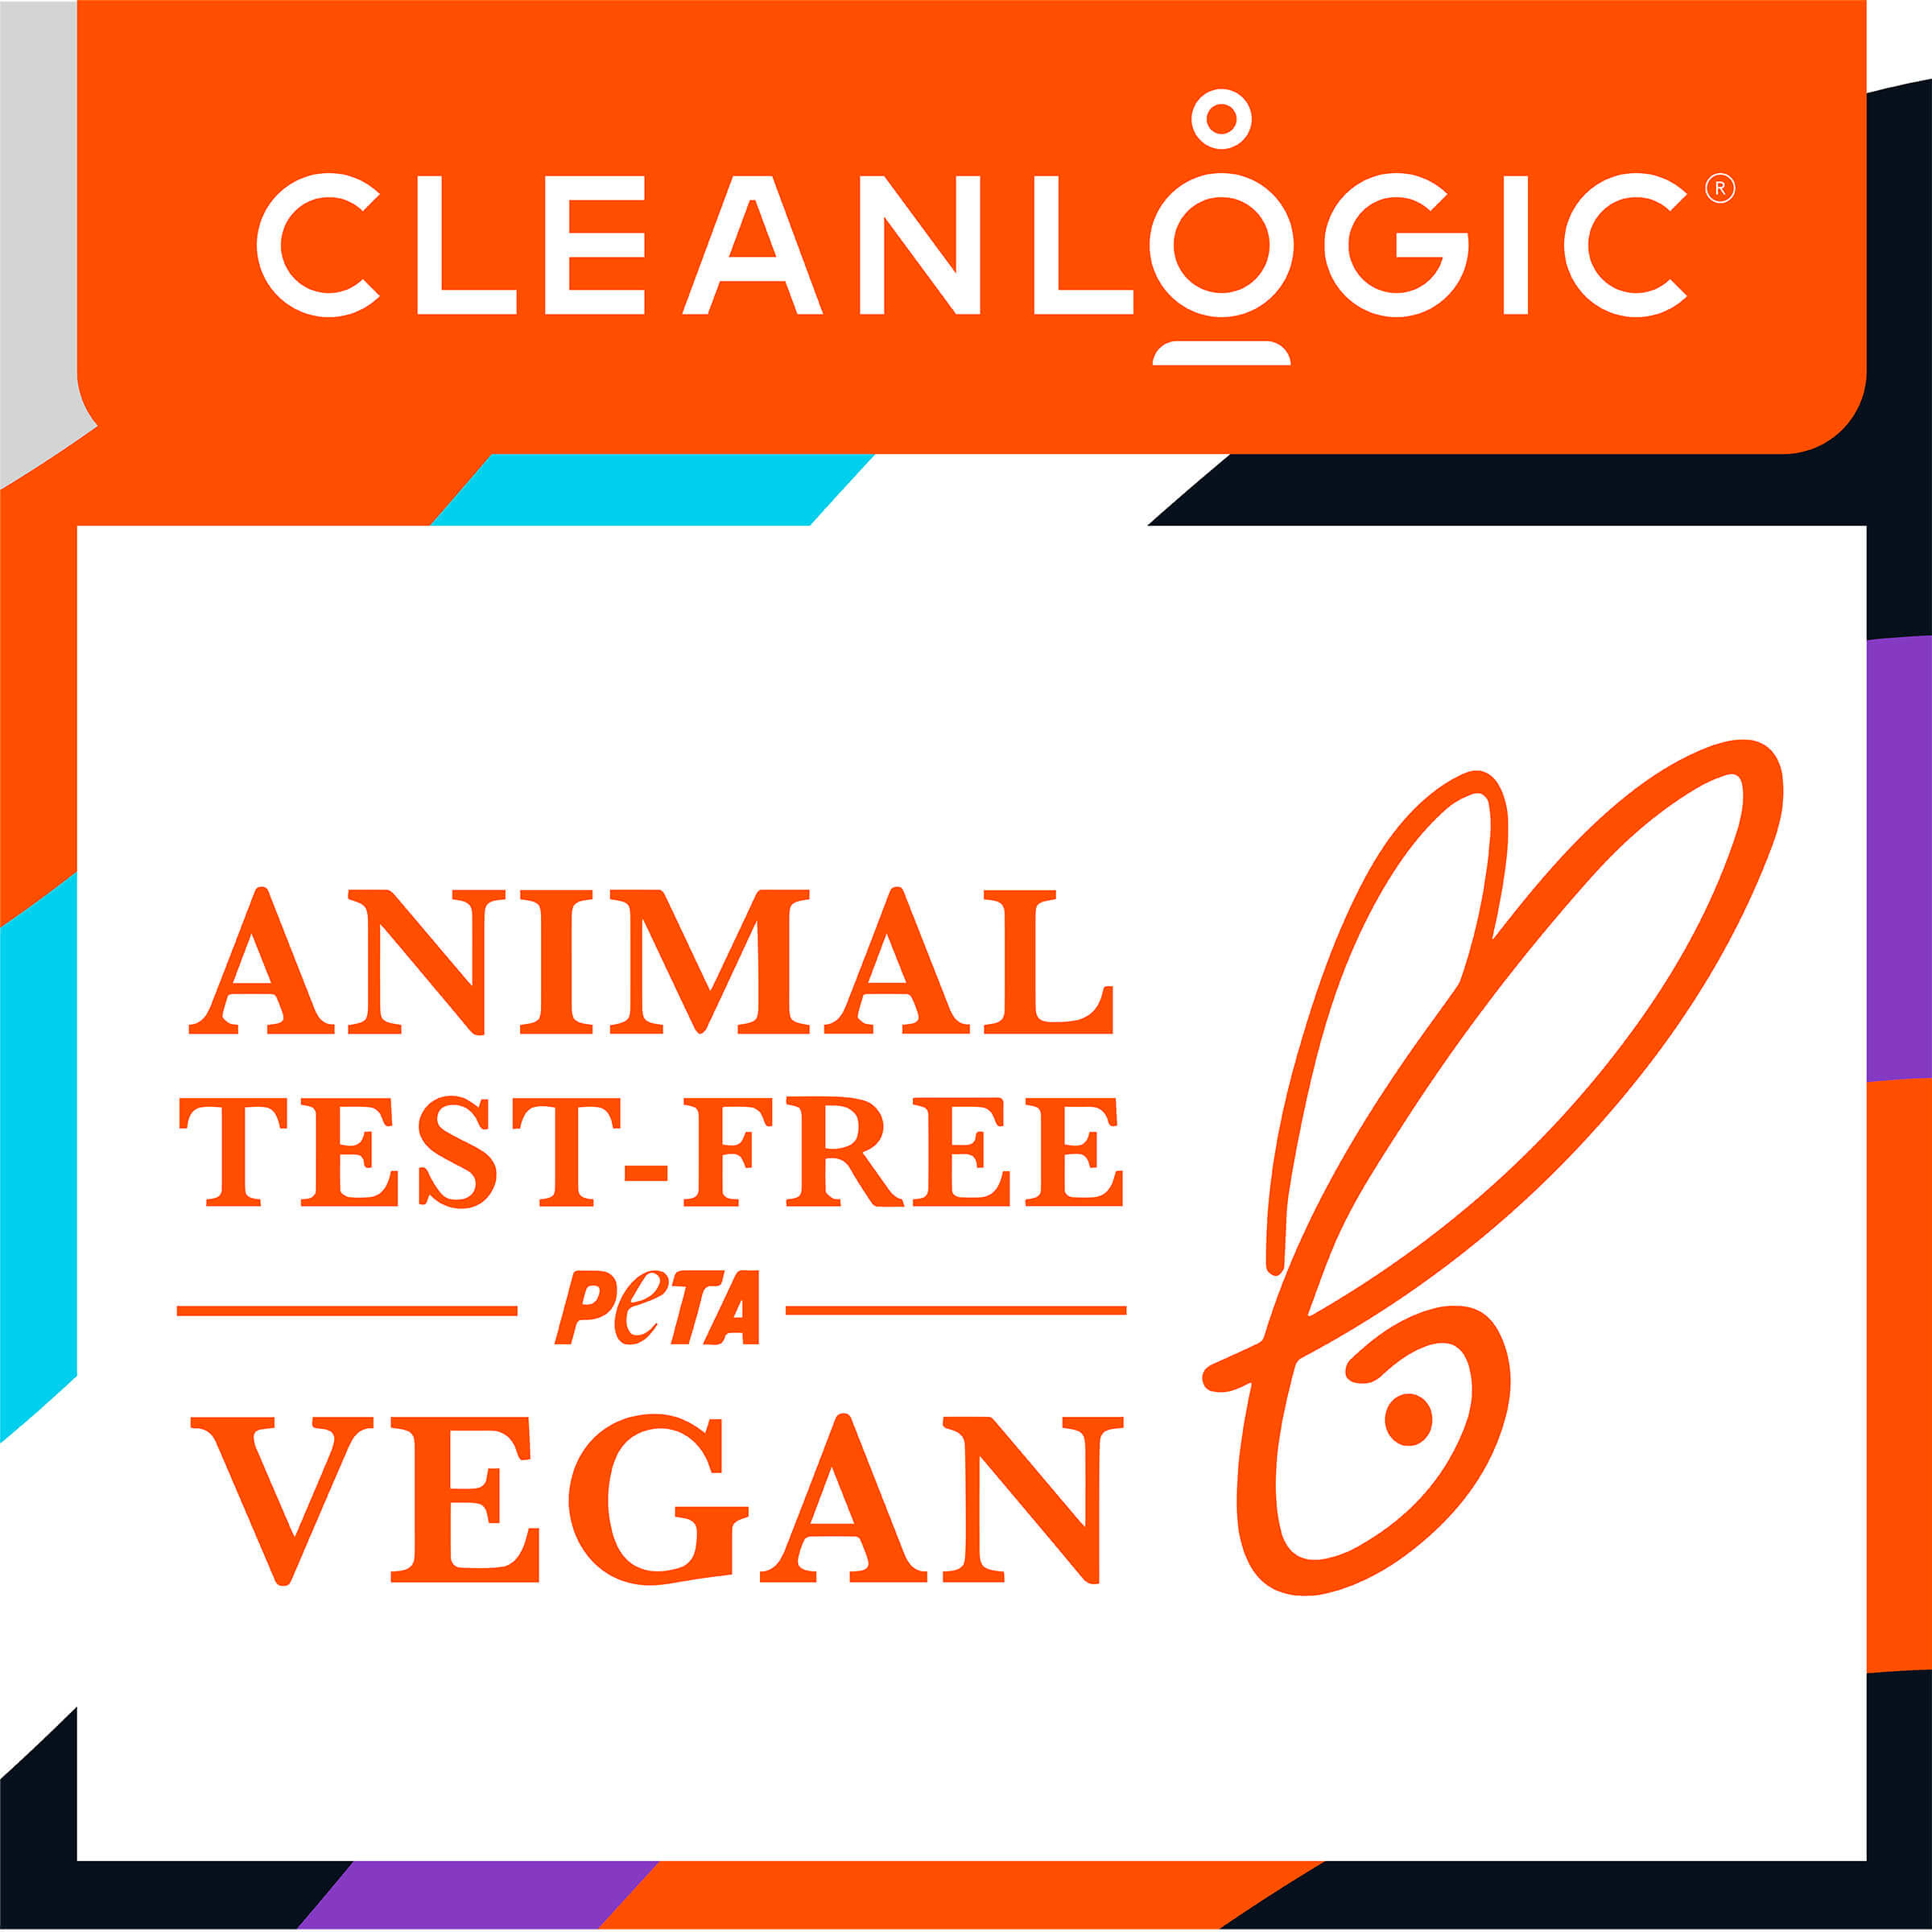 Animal Test-Free, Vegan